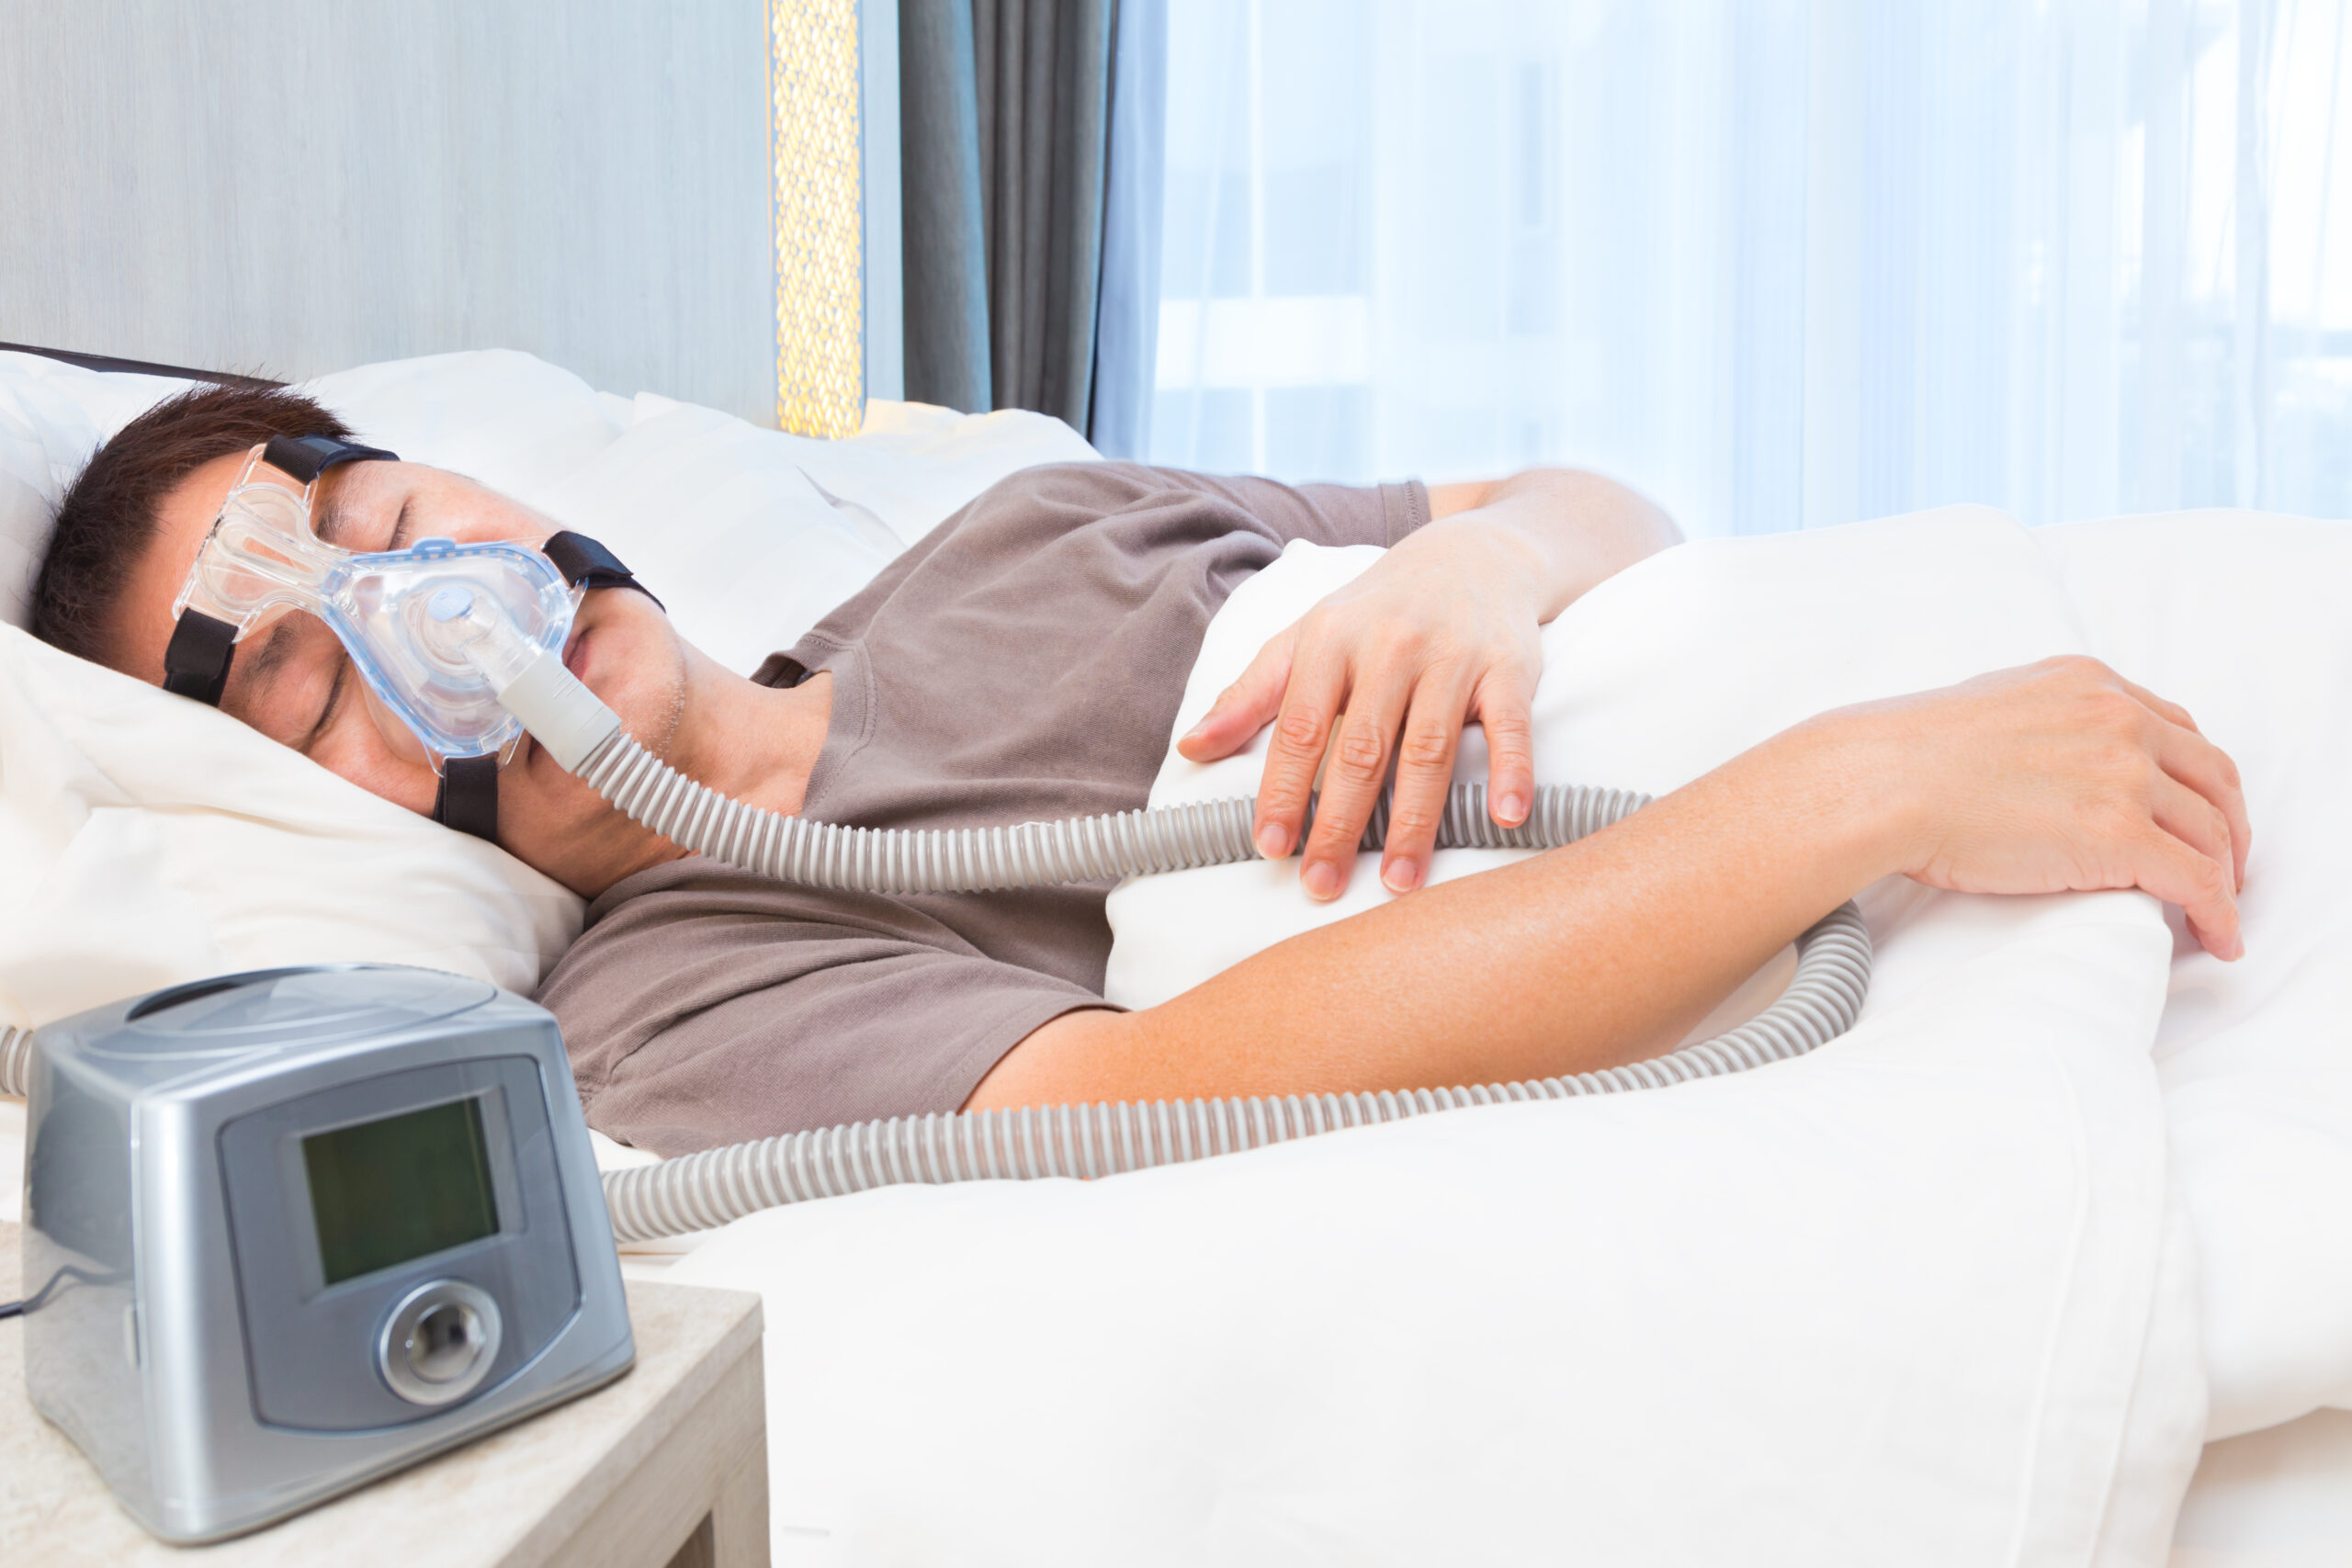 CPAP Machines SleepApnea Org